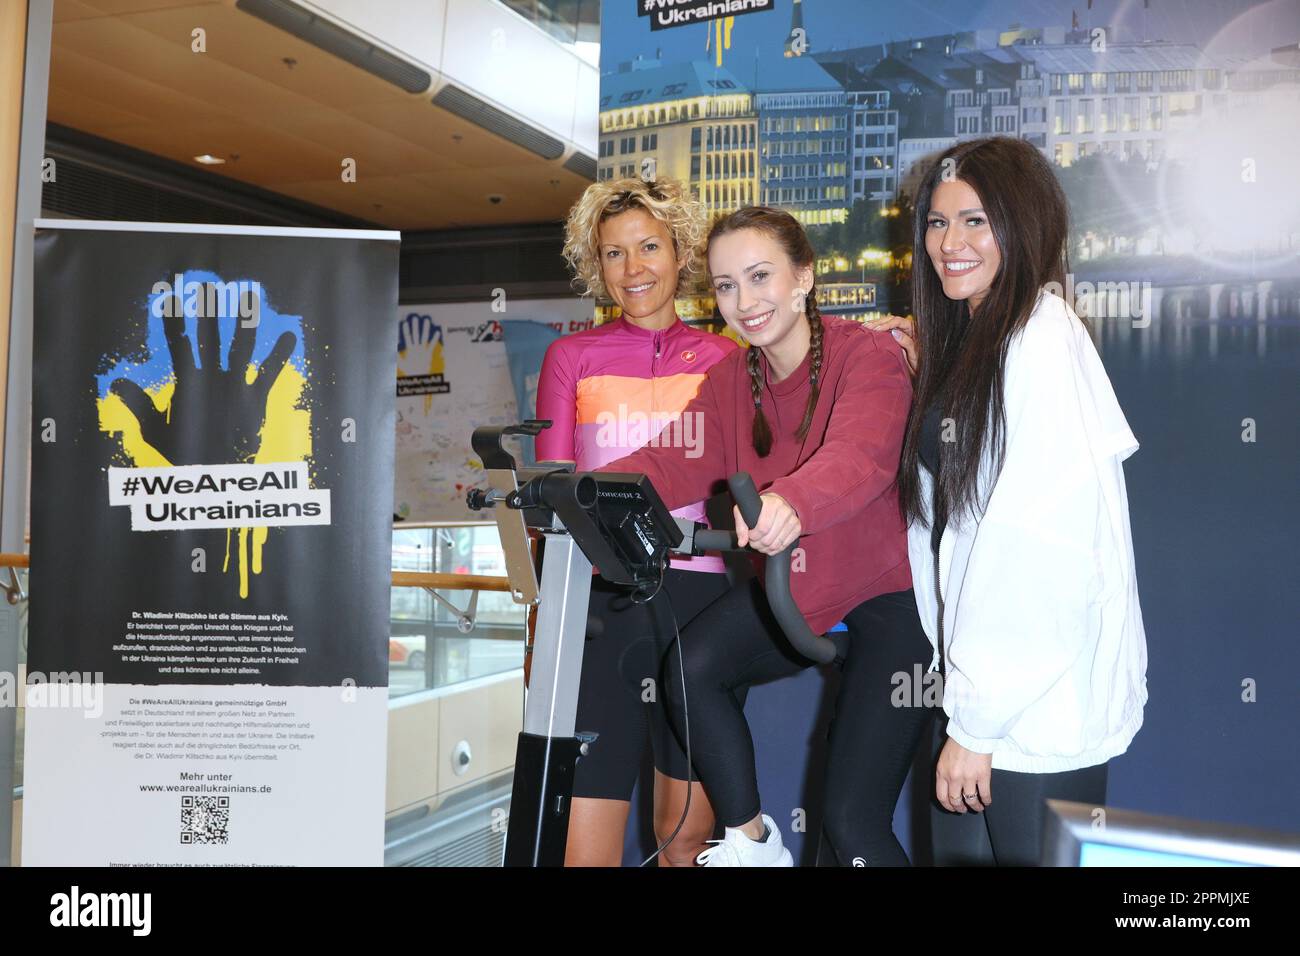 Annika Zimmermann,Svenja TheiÃŸen,Alicia Alvarez,cyclisme caritatif dans le passage Europa où une ampoule est éclairée avec des ergomètres. L'argent va 1:1 à des projets d'aide ukrainiens en coopération avec l'organisation #WeAreAllUkra Banque D'Images